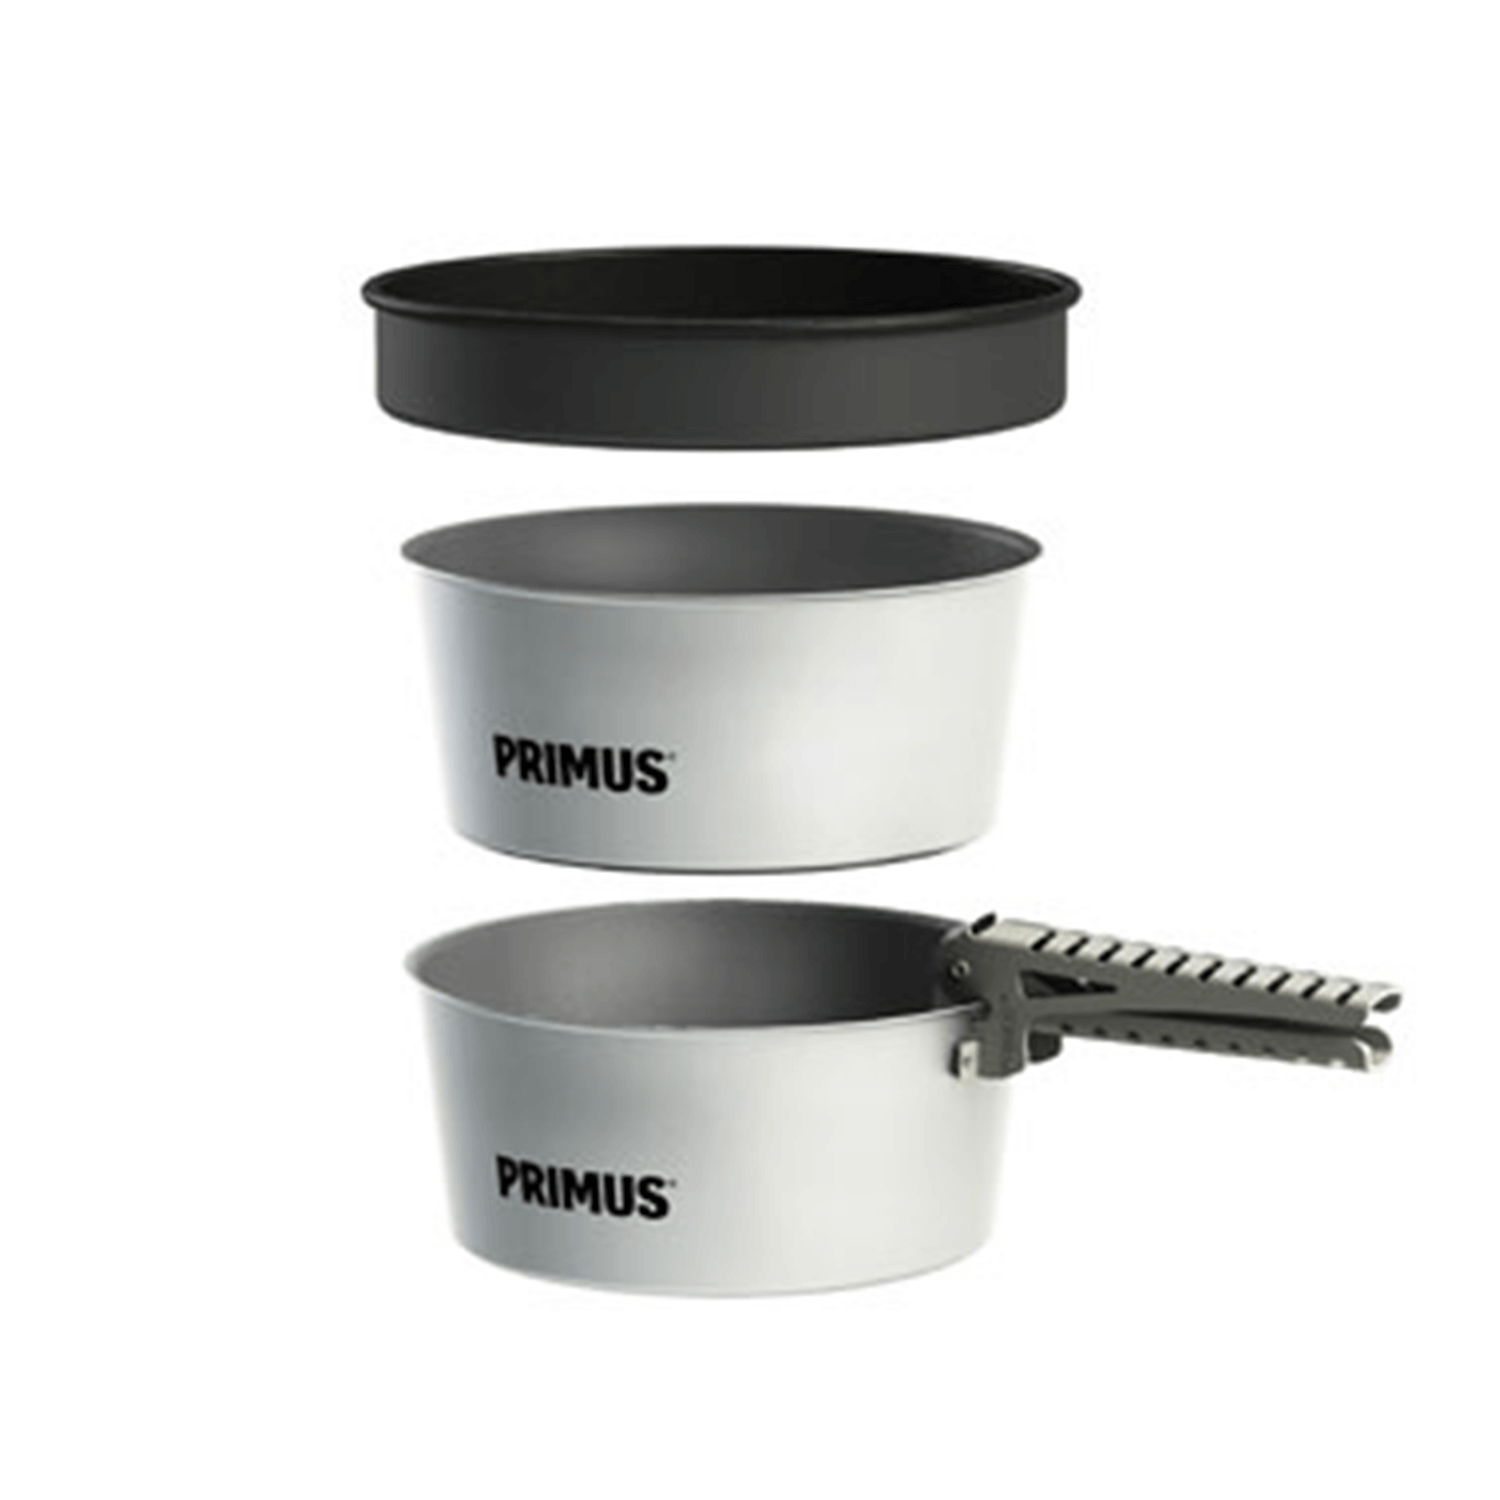  Primus Potset Essentials 2x1.3L